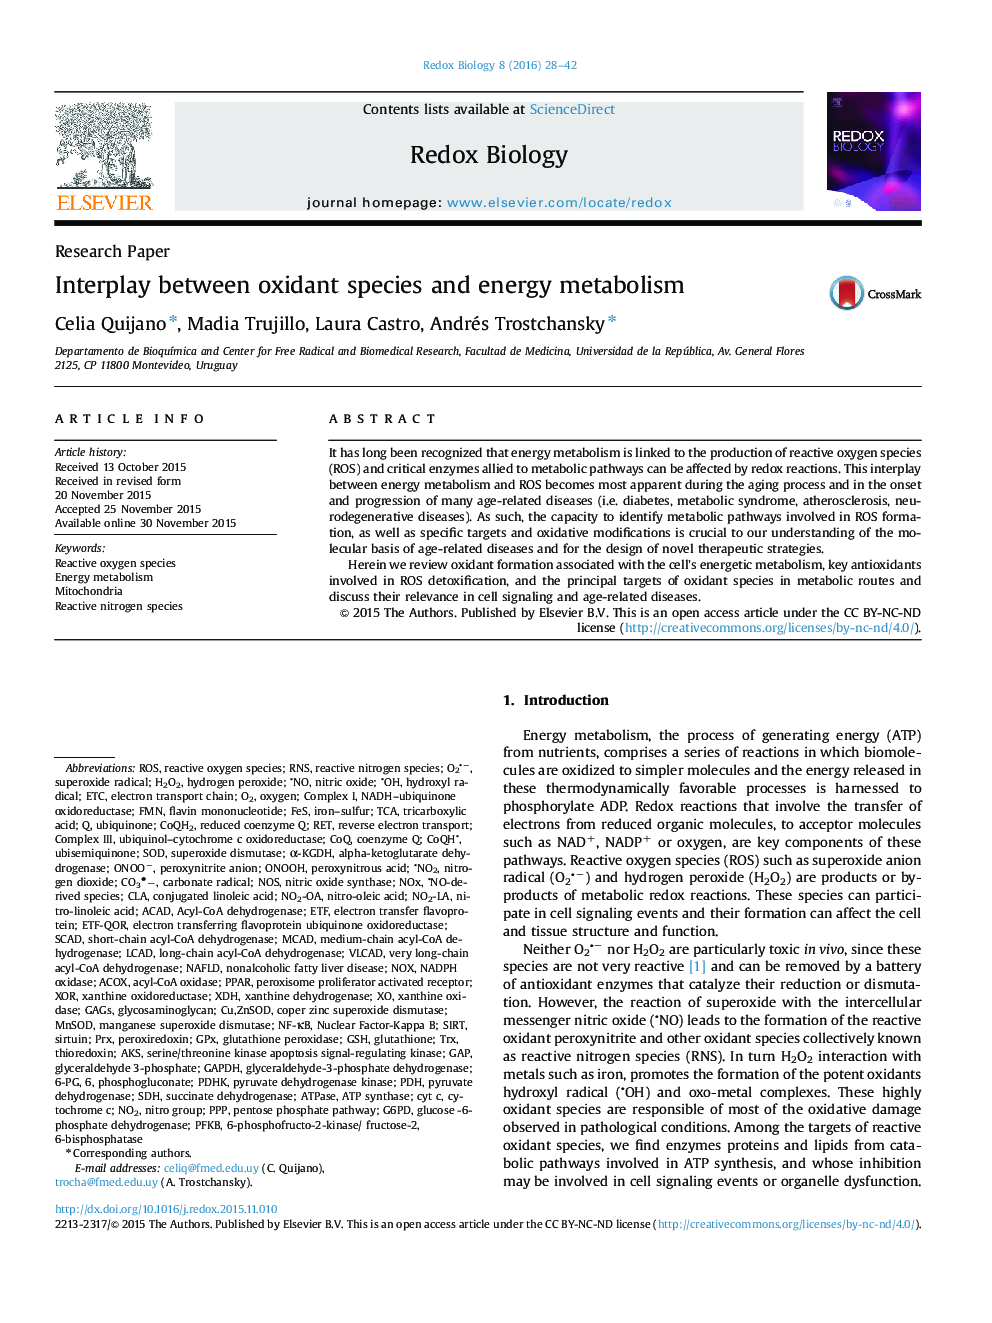 تعامل بین گونه های اکسیدان و متابولیسم انرژی 